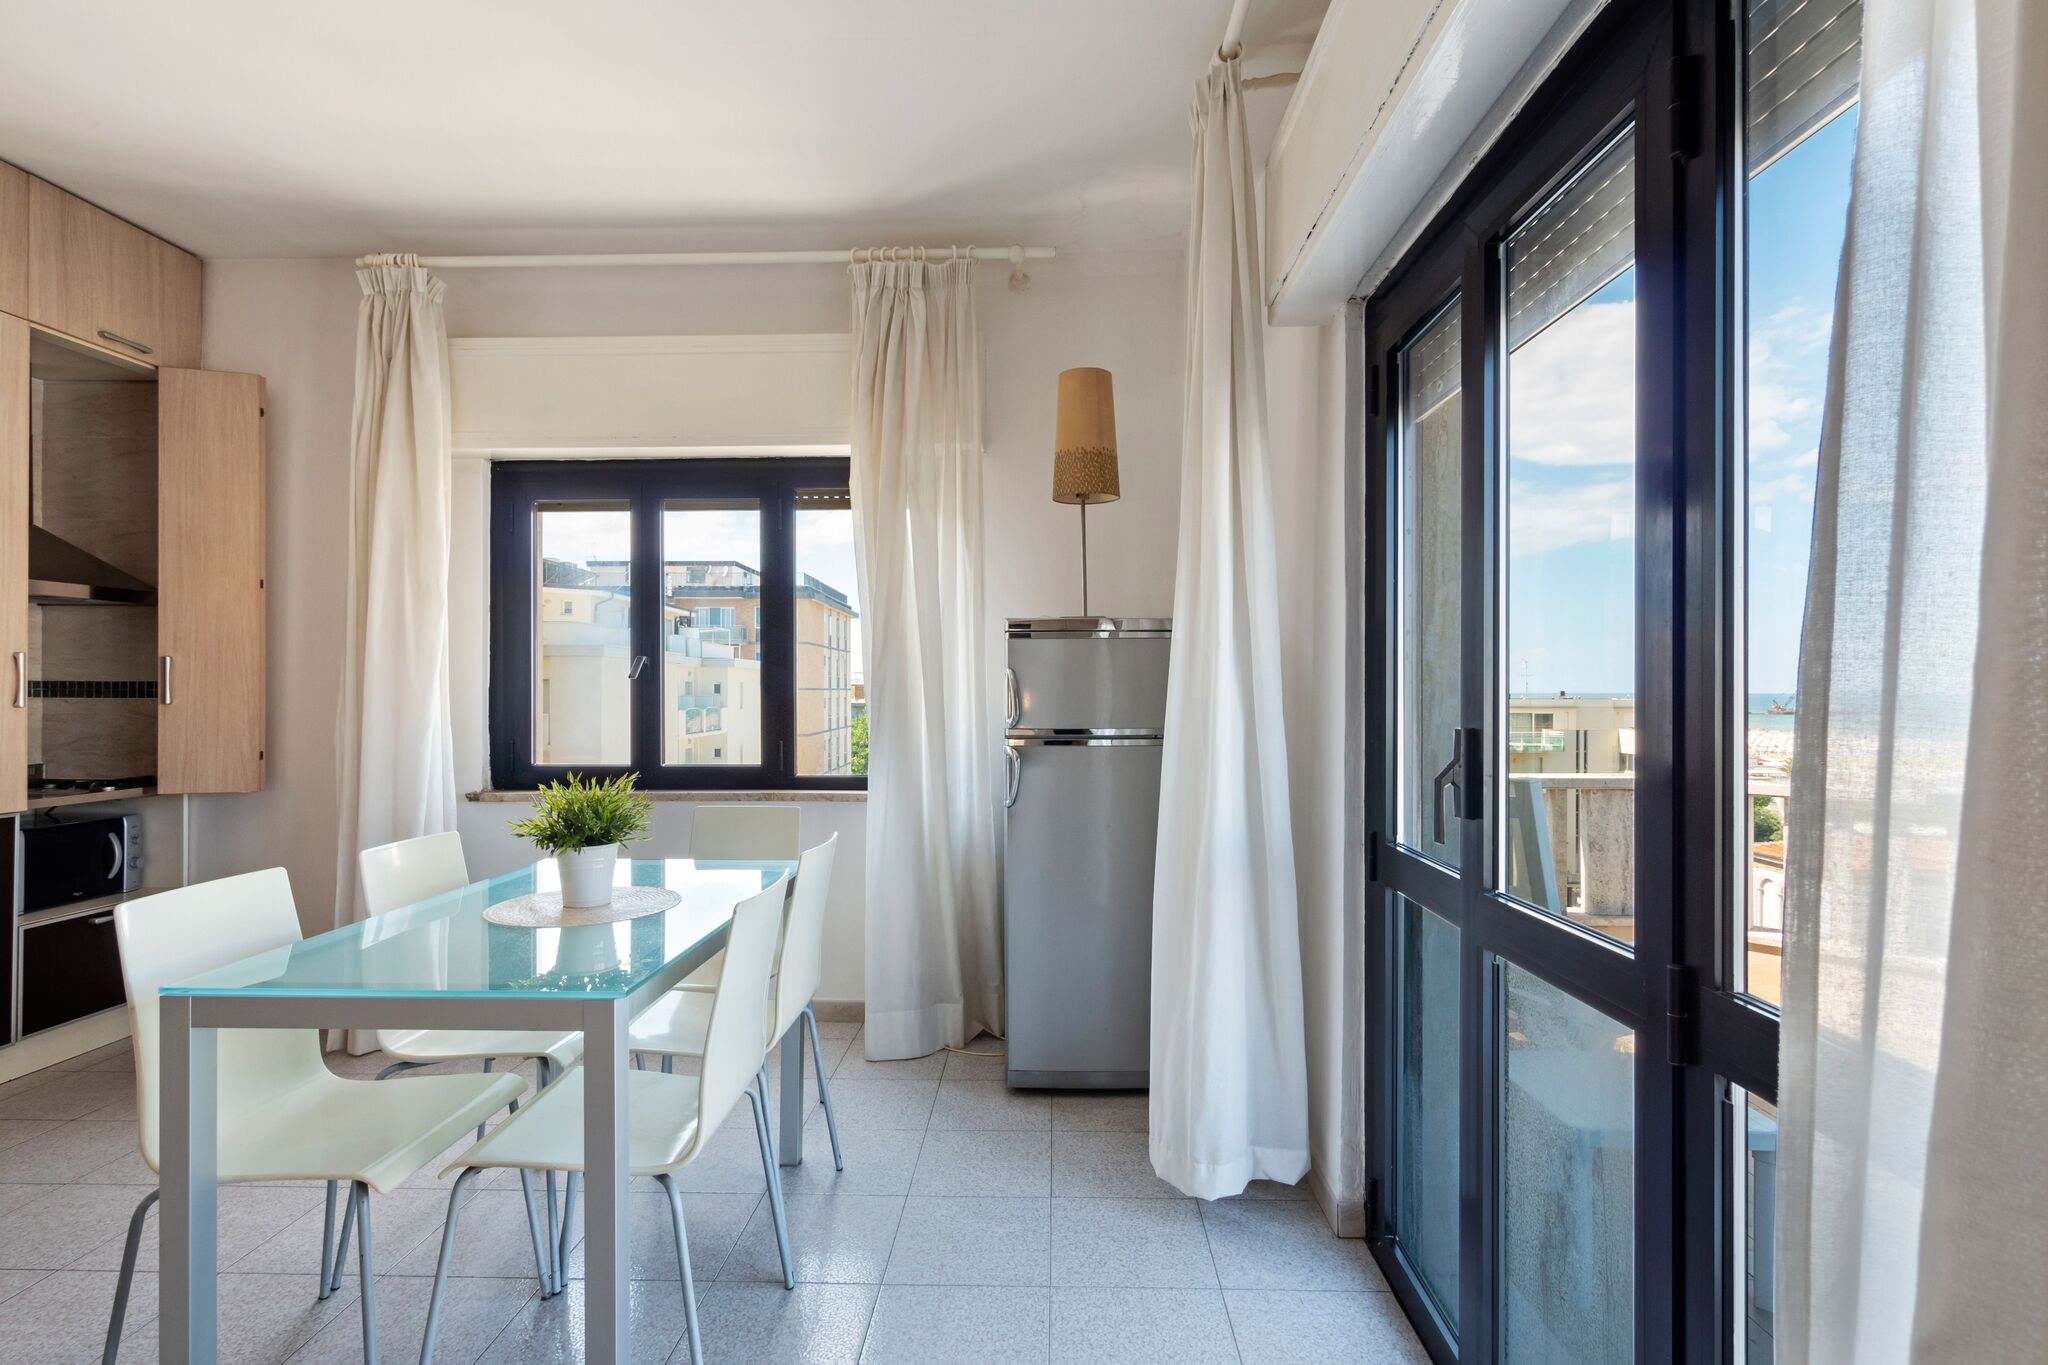 Bel appartement situé à Rimini, en bord de mer